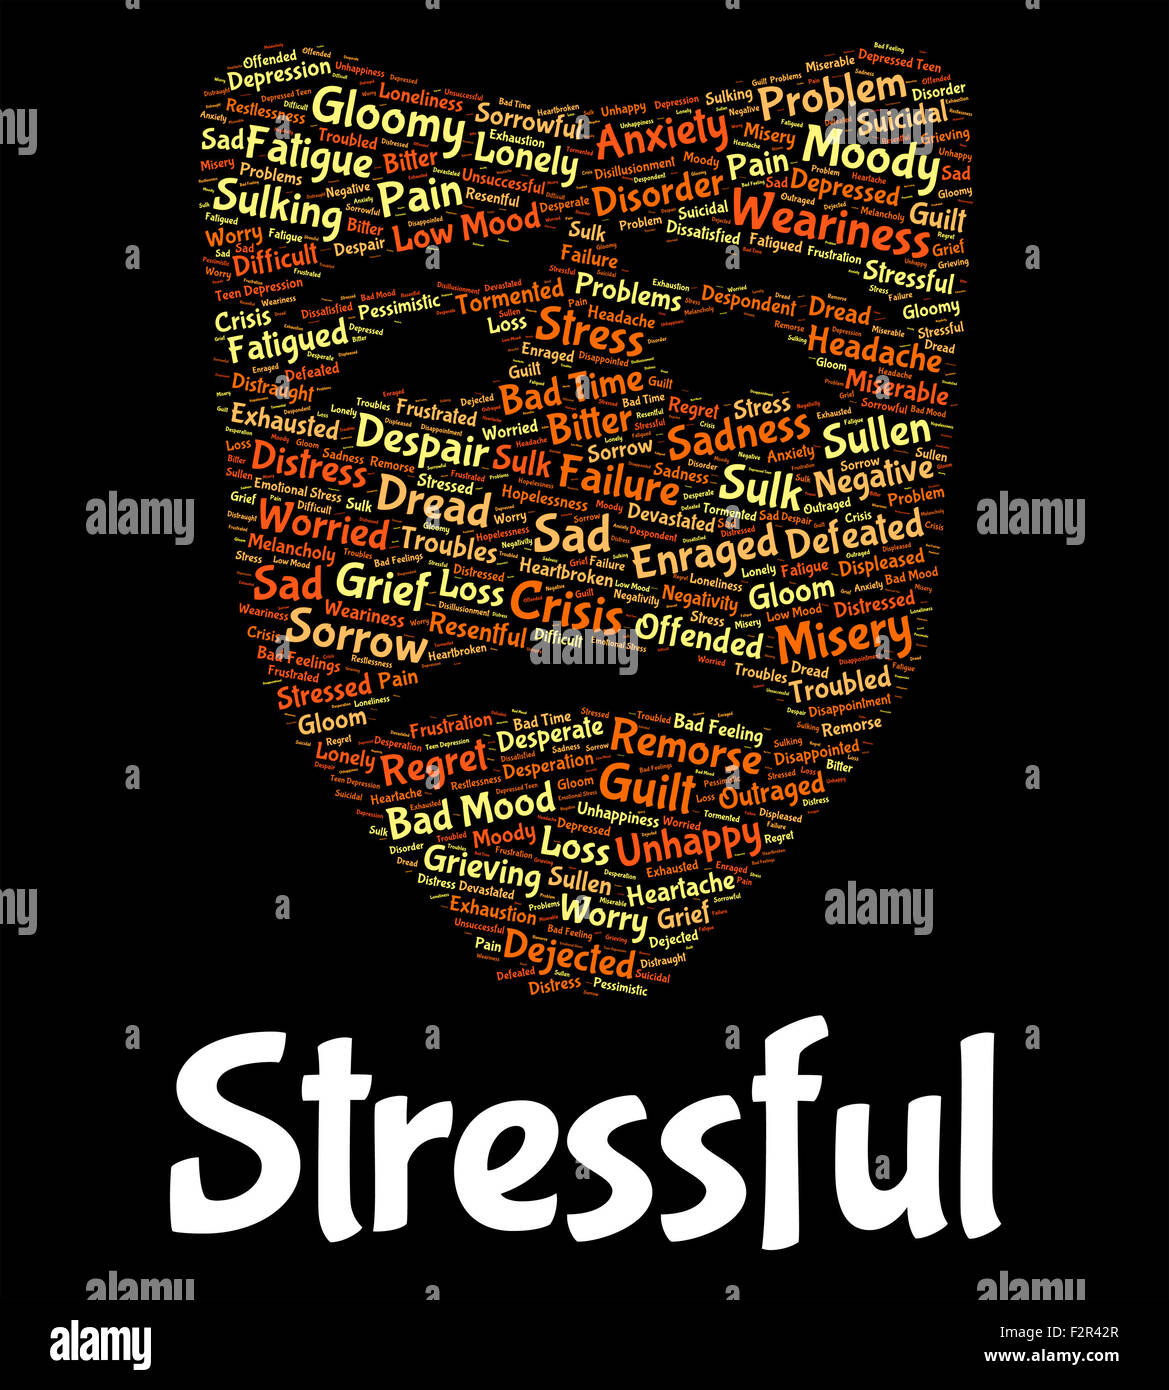 Las presiones del significado de la palabra estrés y tensión de sobrecarga Foto de stock